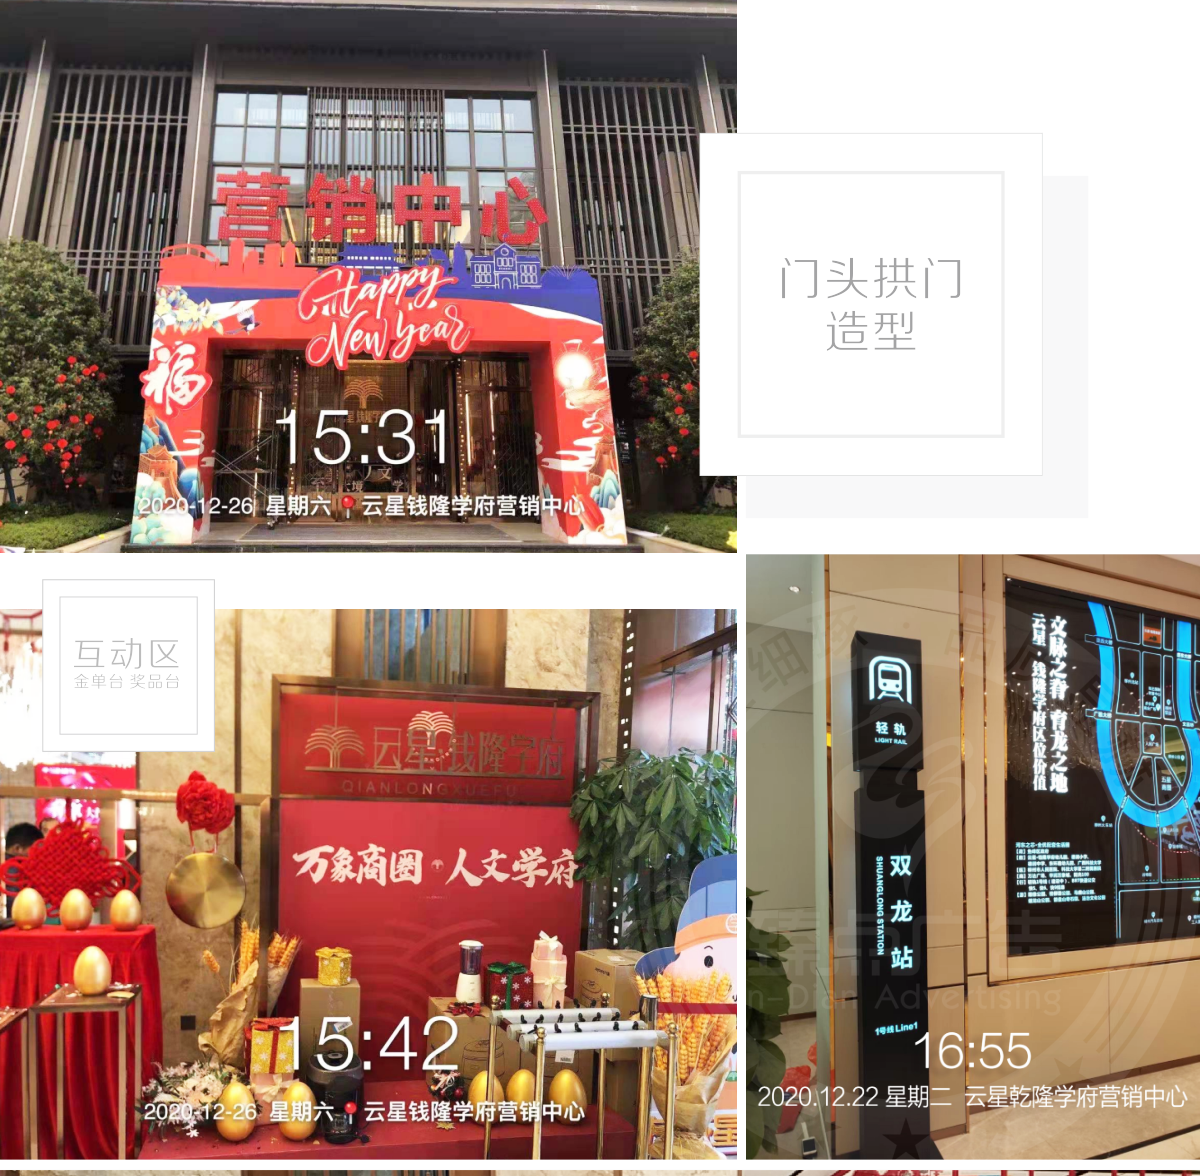 柳州云星钱隆学府营销中心广告策划设计制作红包墙,造型拱门,新春活动包装_01.png